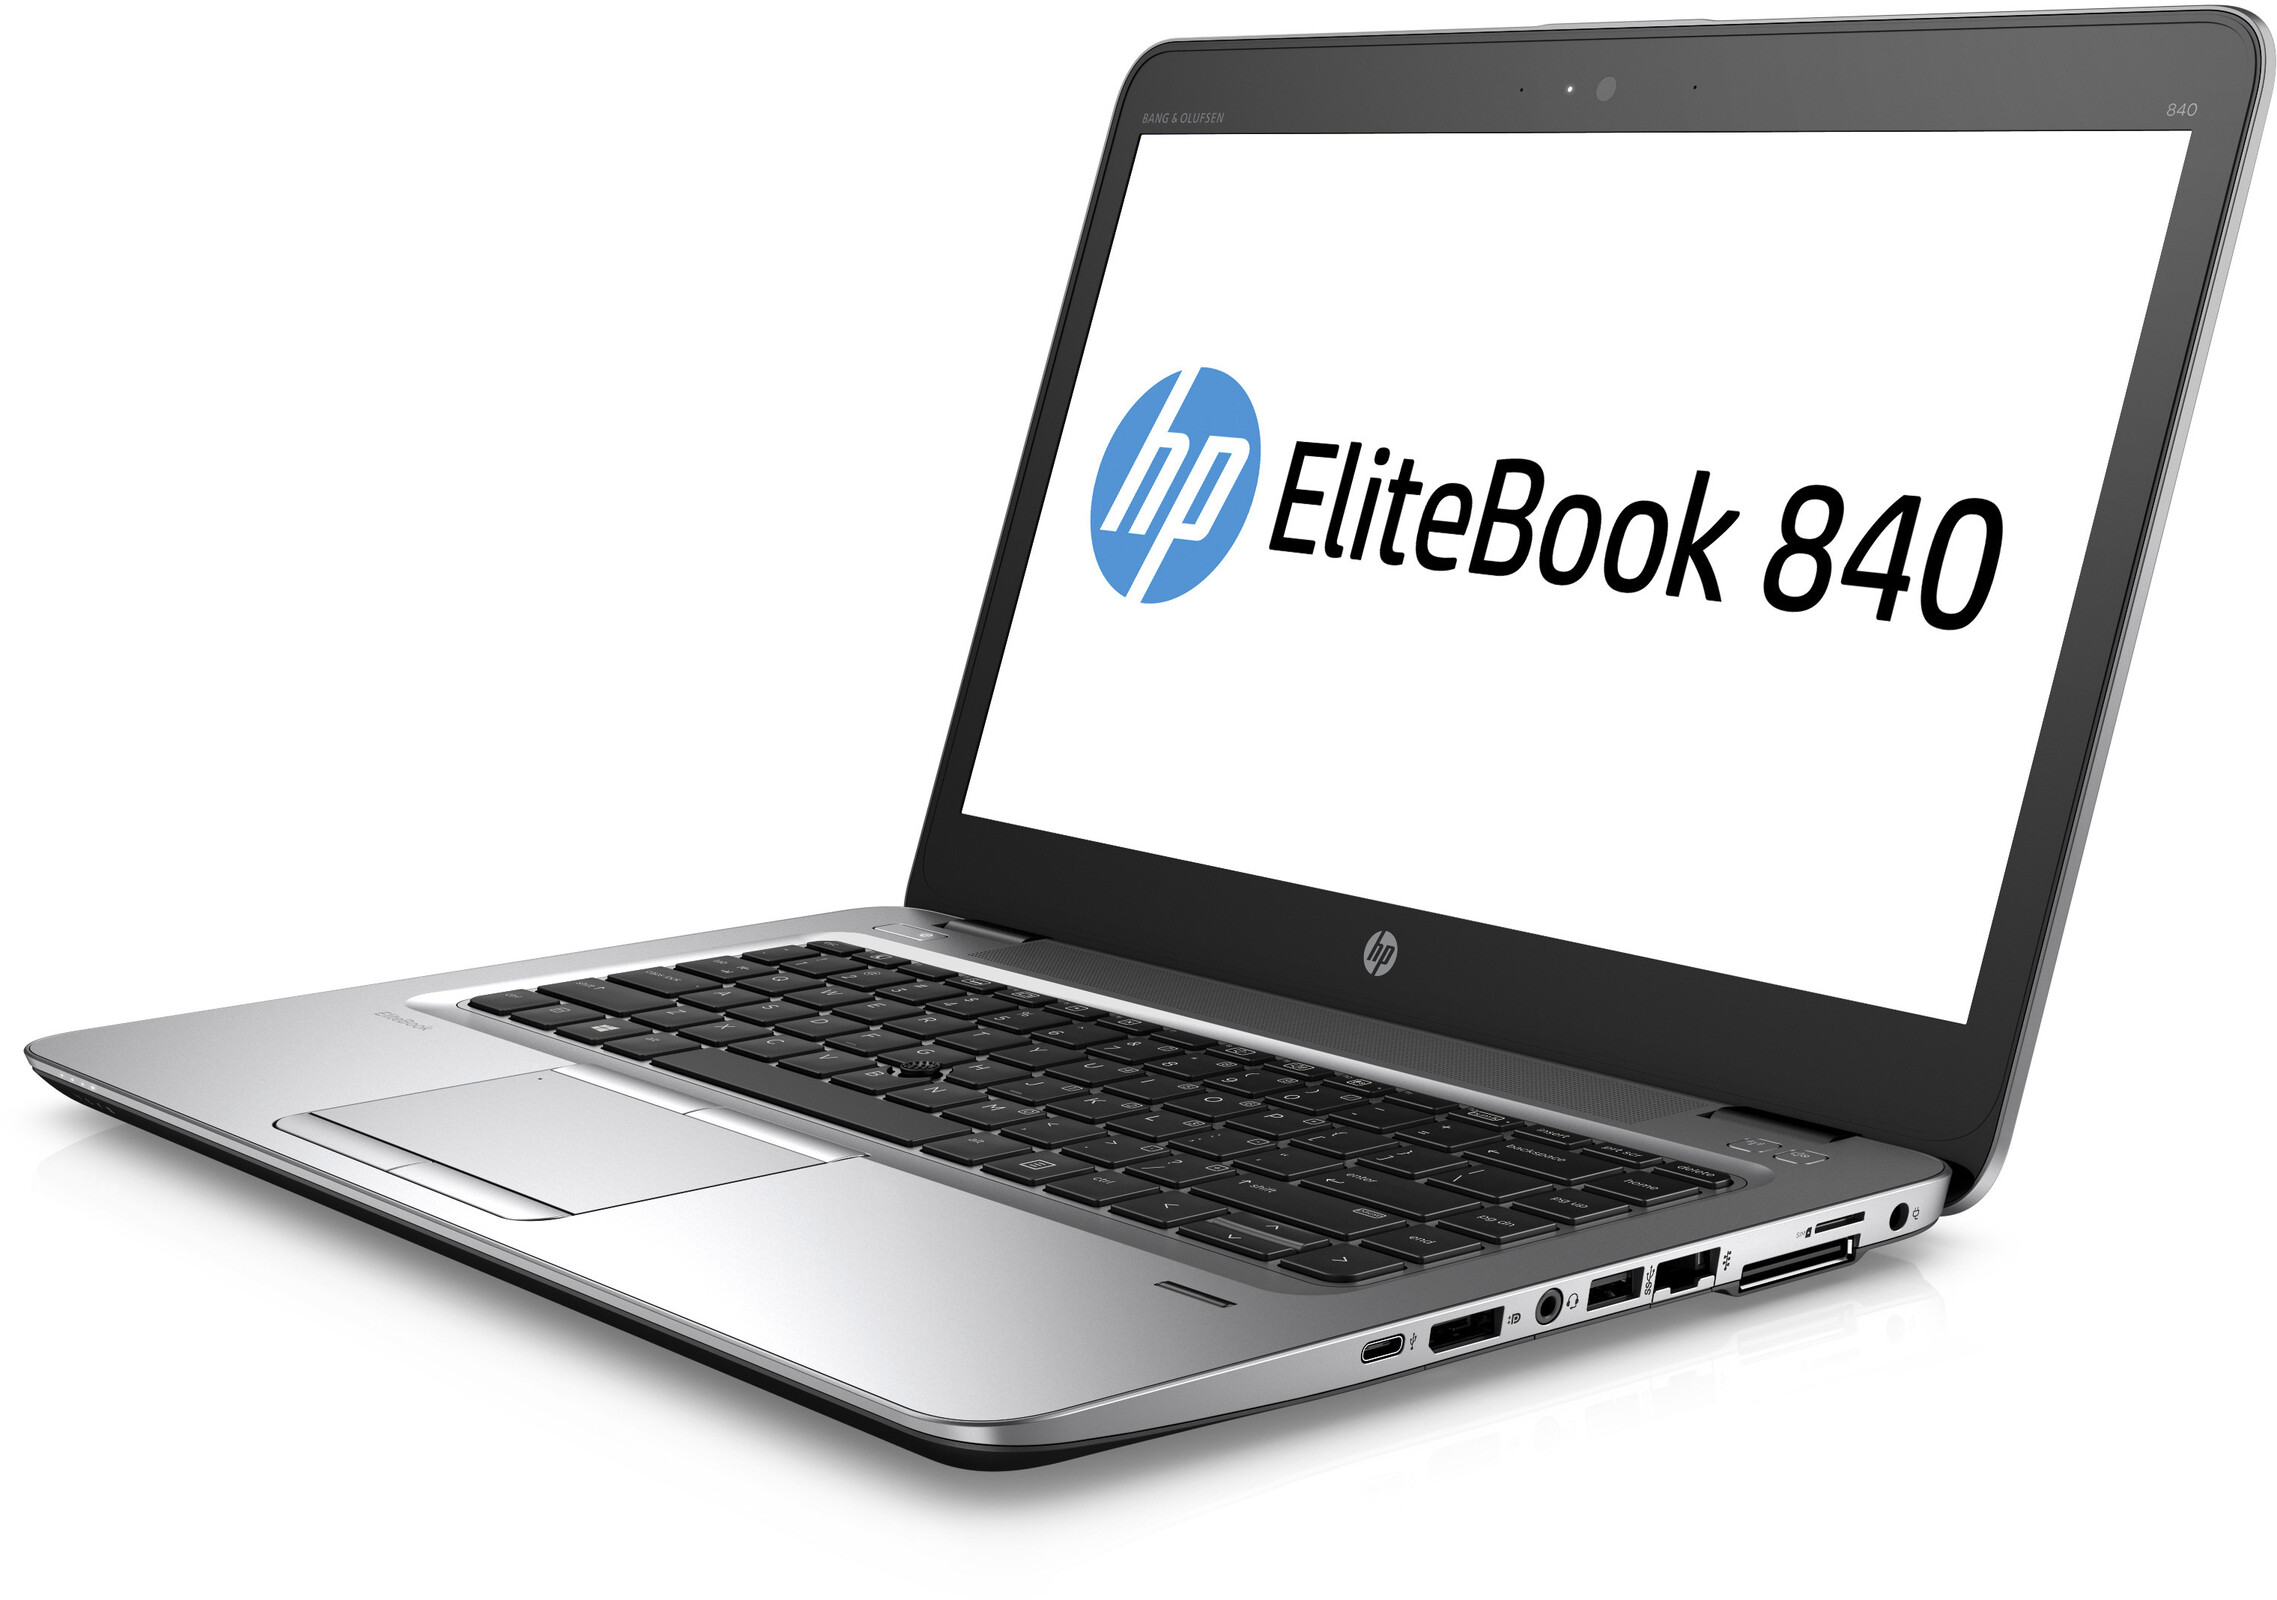 HP Elitebook 840 G5 3JX27EA